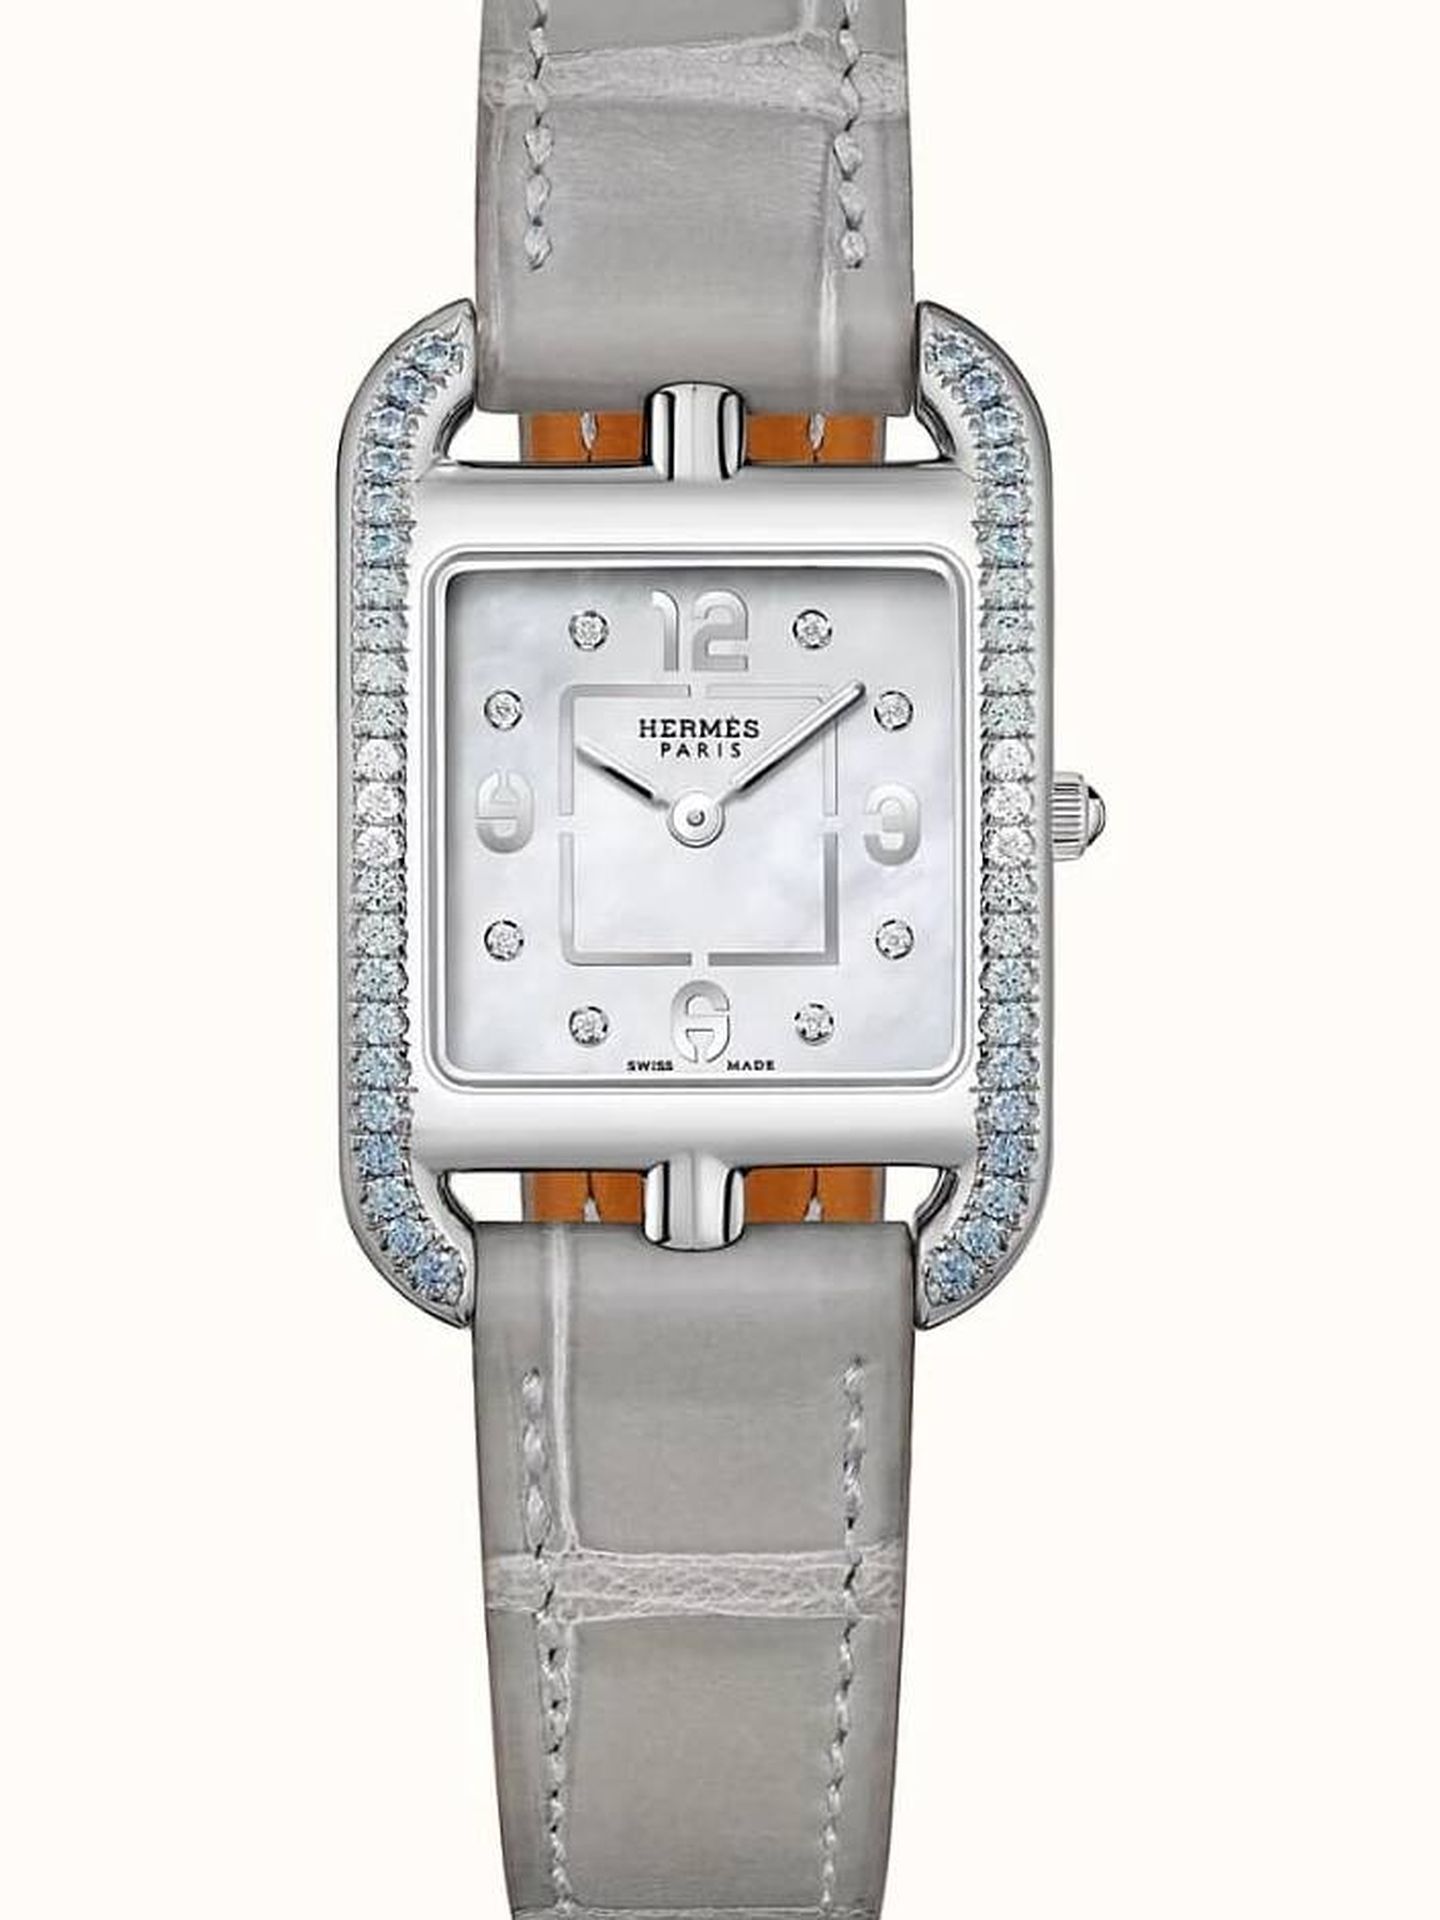 Imagen del nuevo reloj Hermès de Máxima de Holanda. (Archivo)